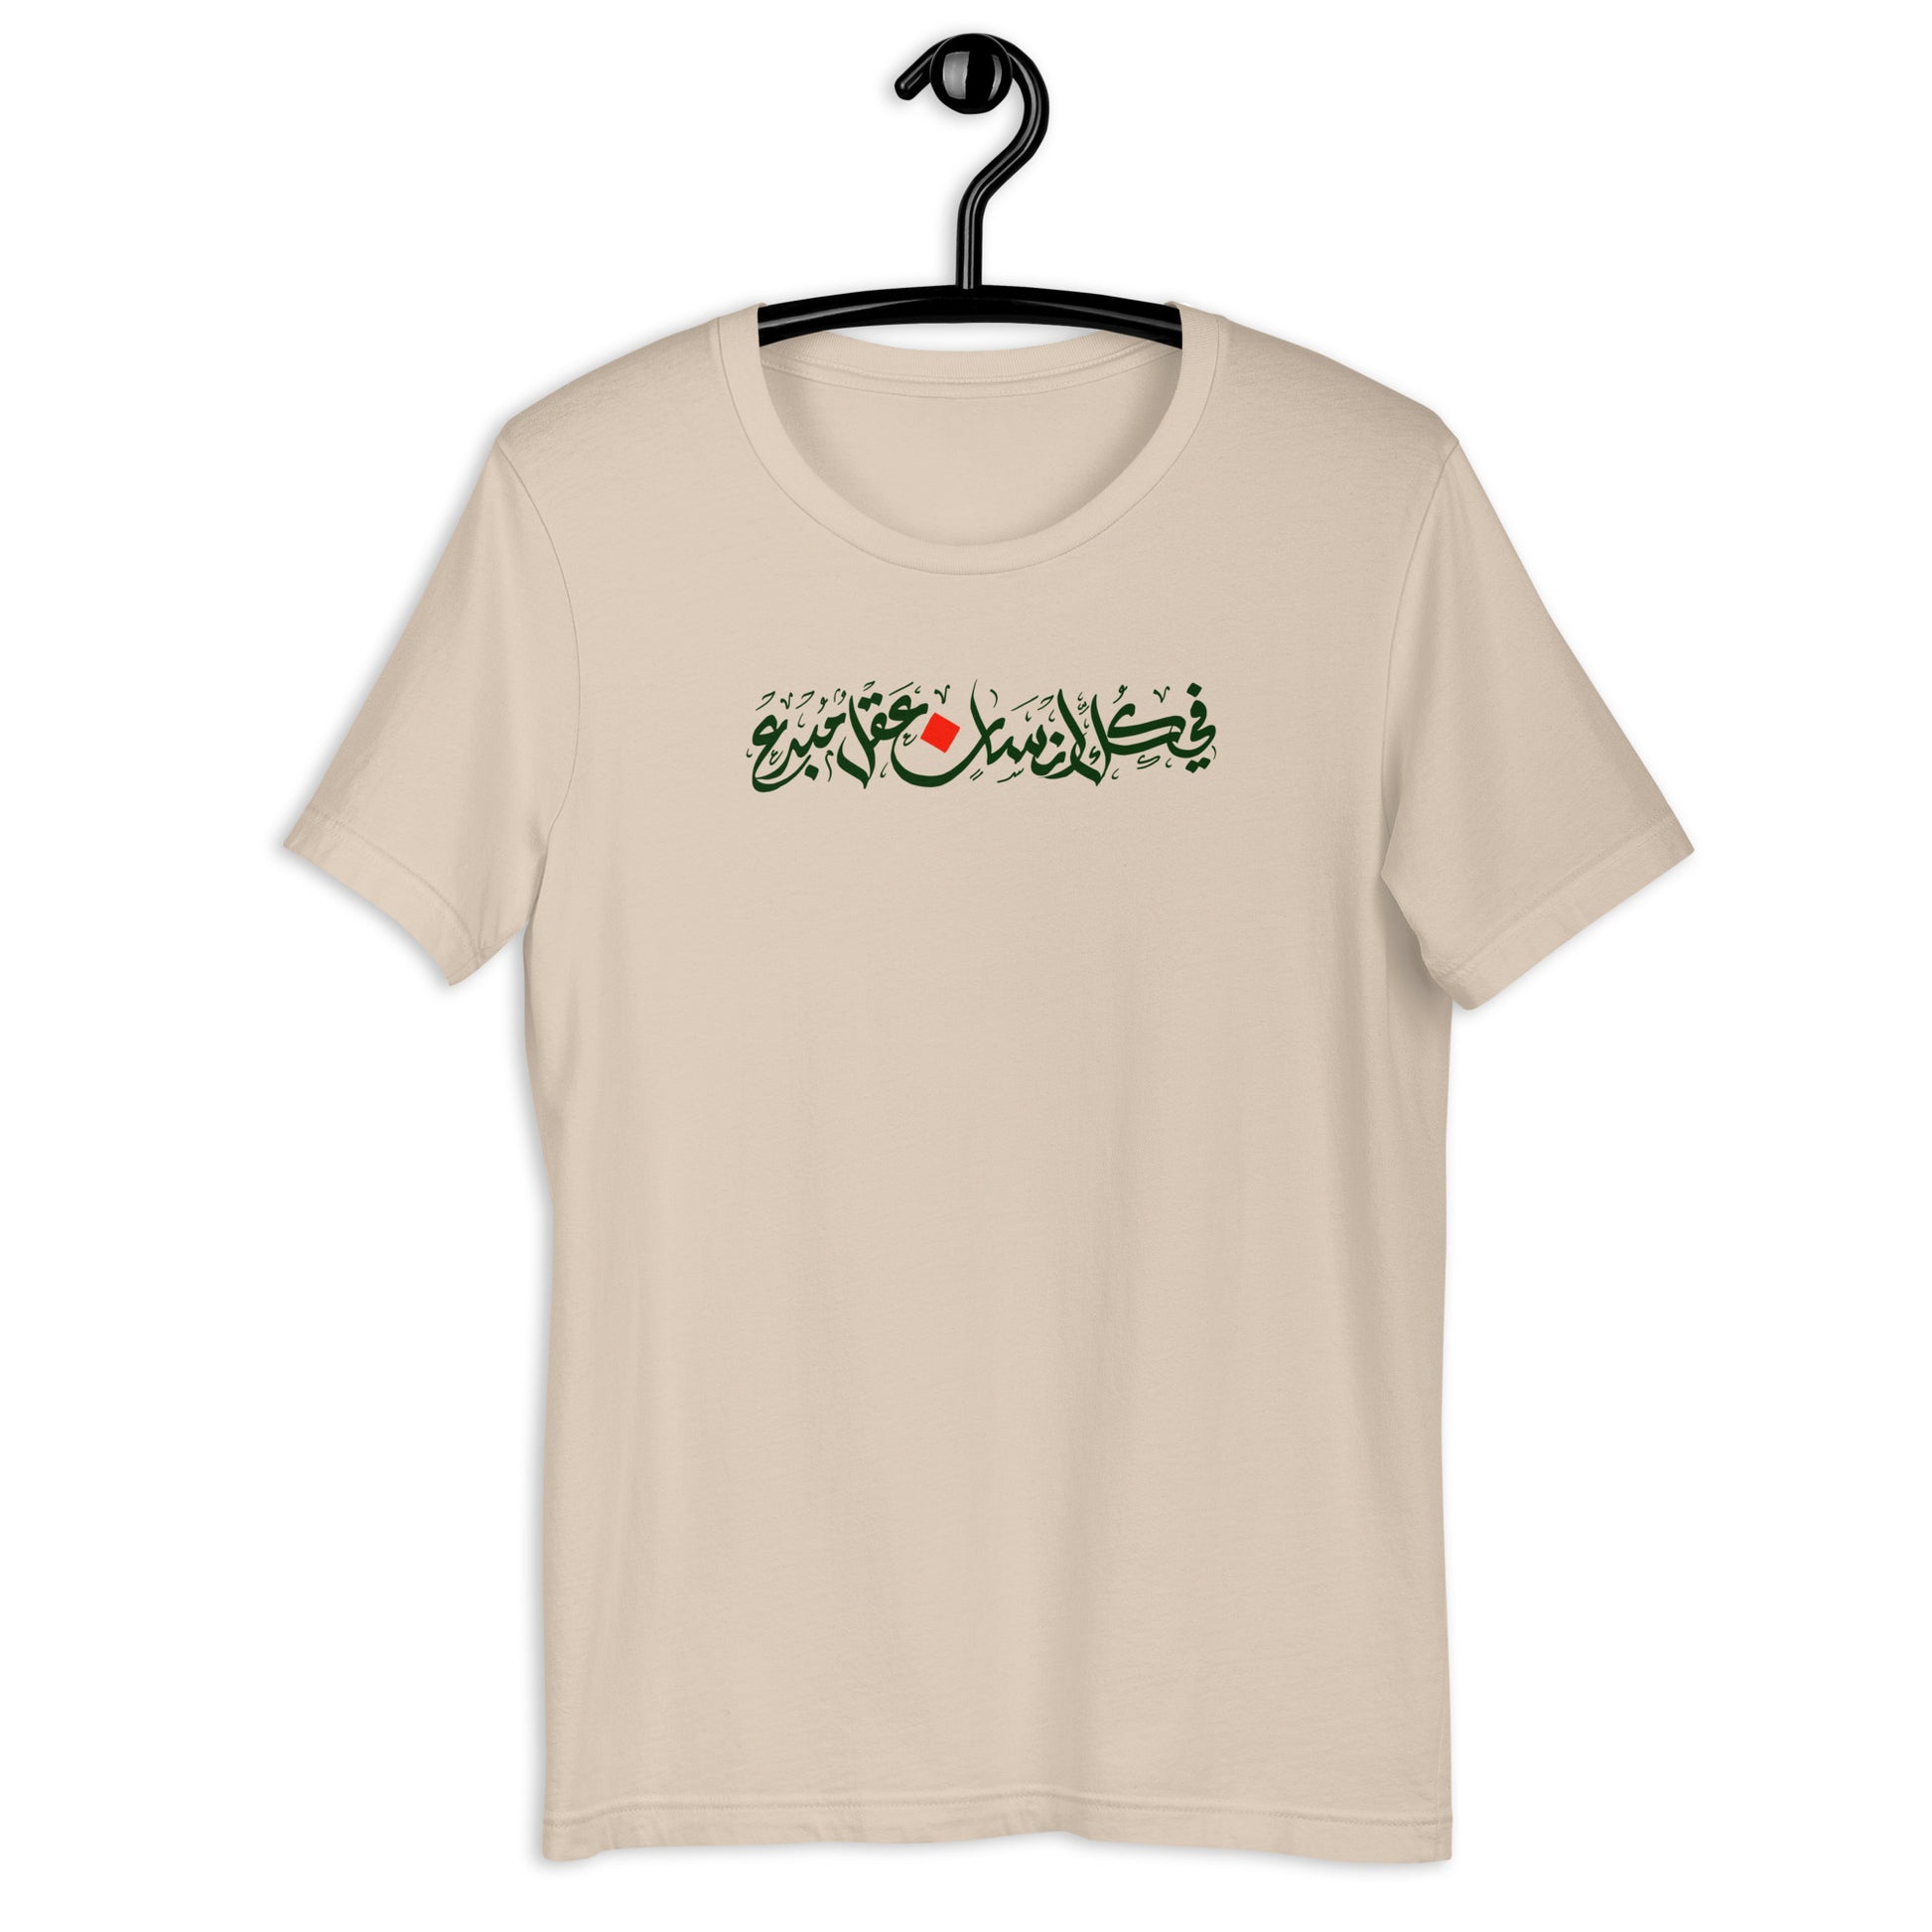 Unisex t-shirt - SultanSouk